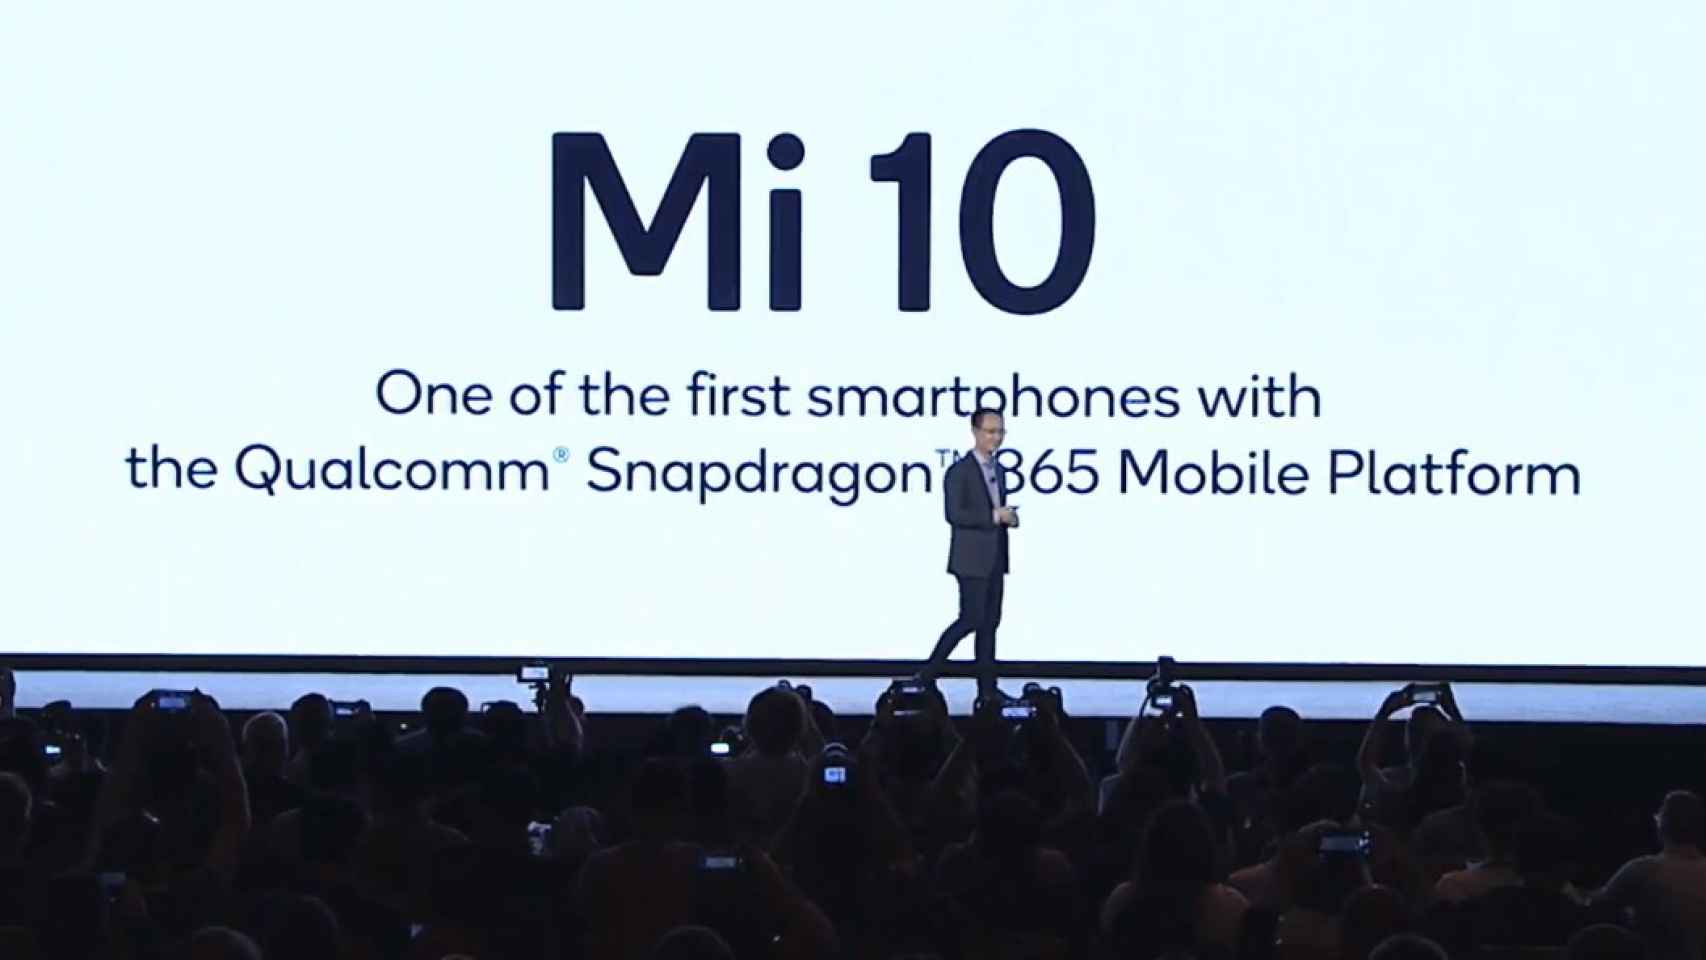 El Xiaomi Mi 10 se presentará el 23 de febrero: todo lo que esperamos de él